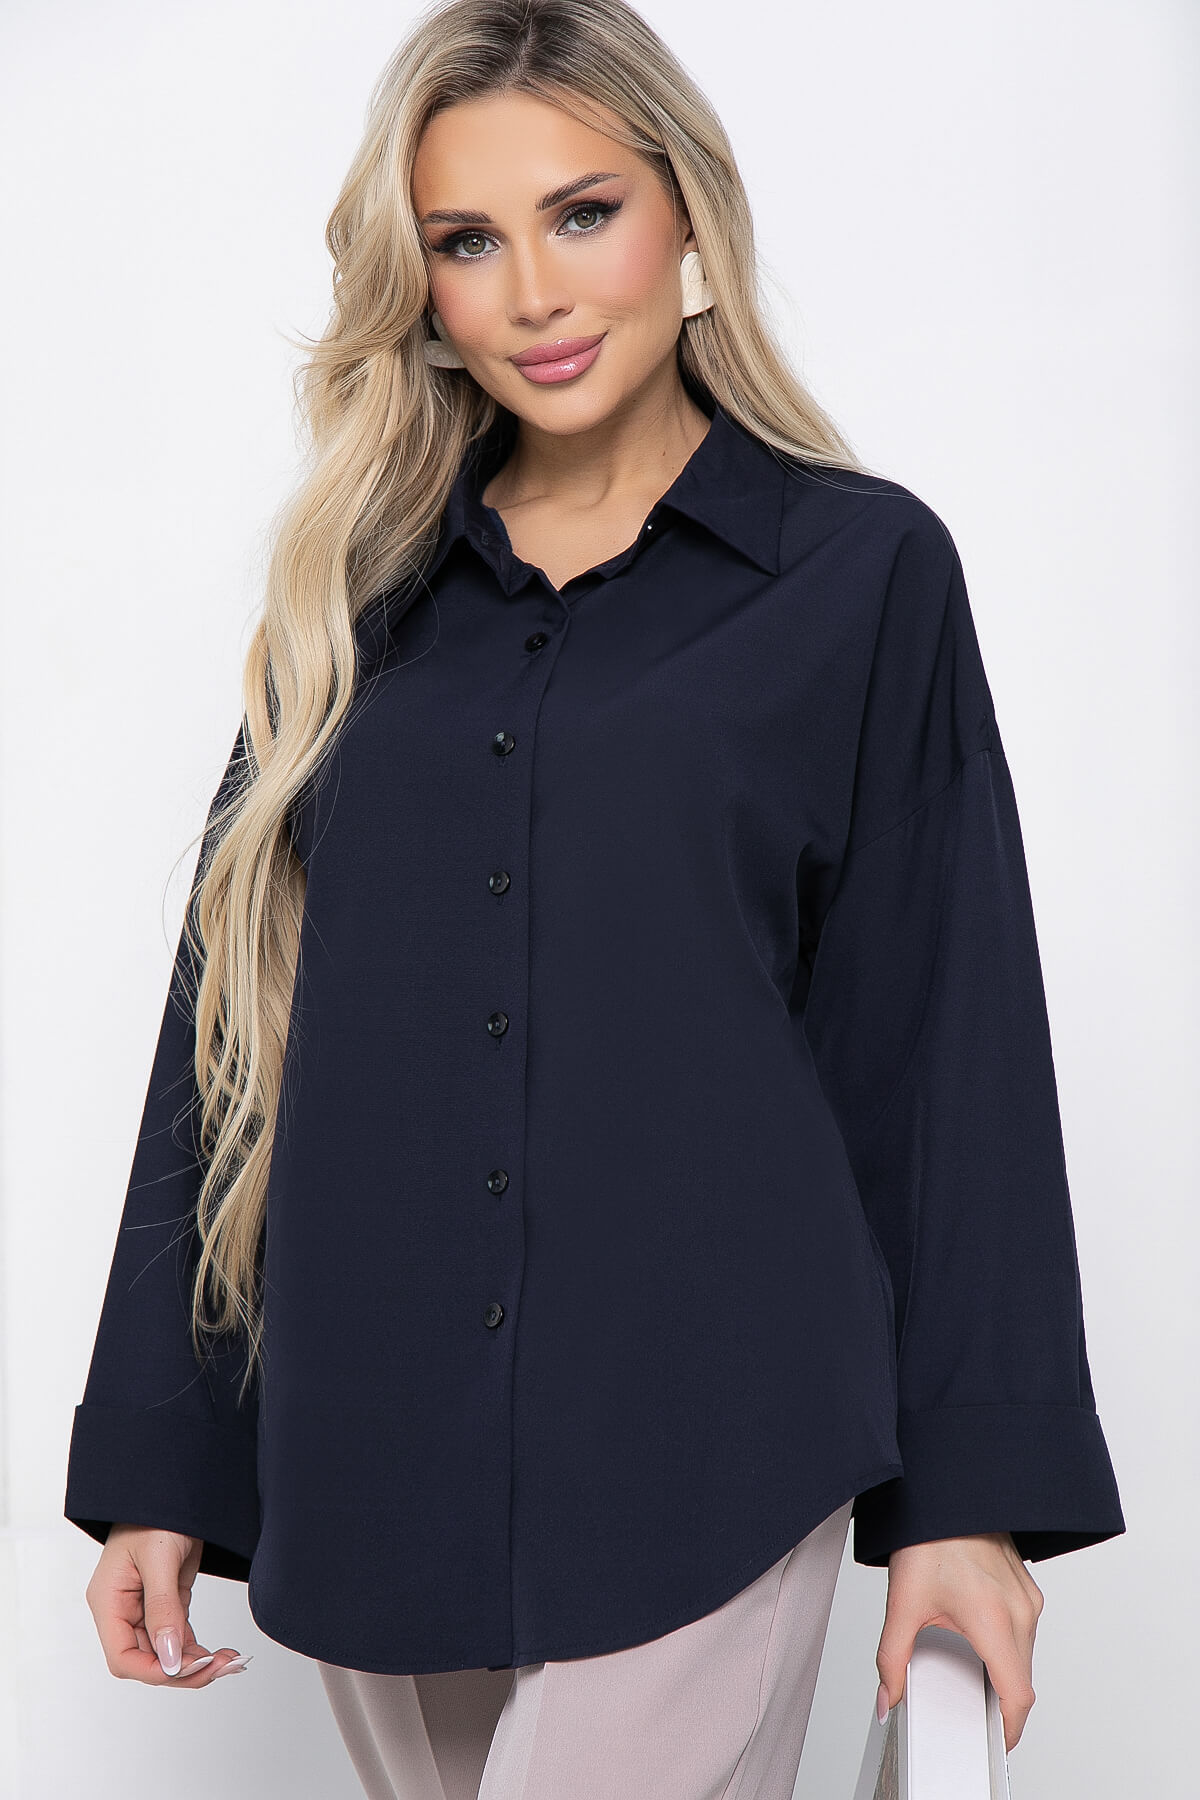 Рубашка женская LT Collection Каталина синяя 54 RU